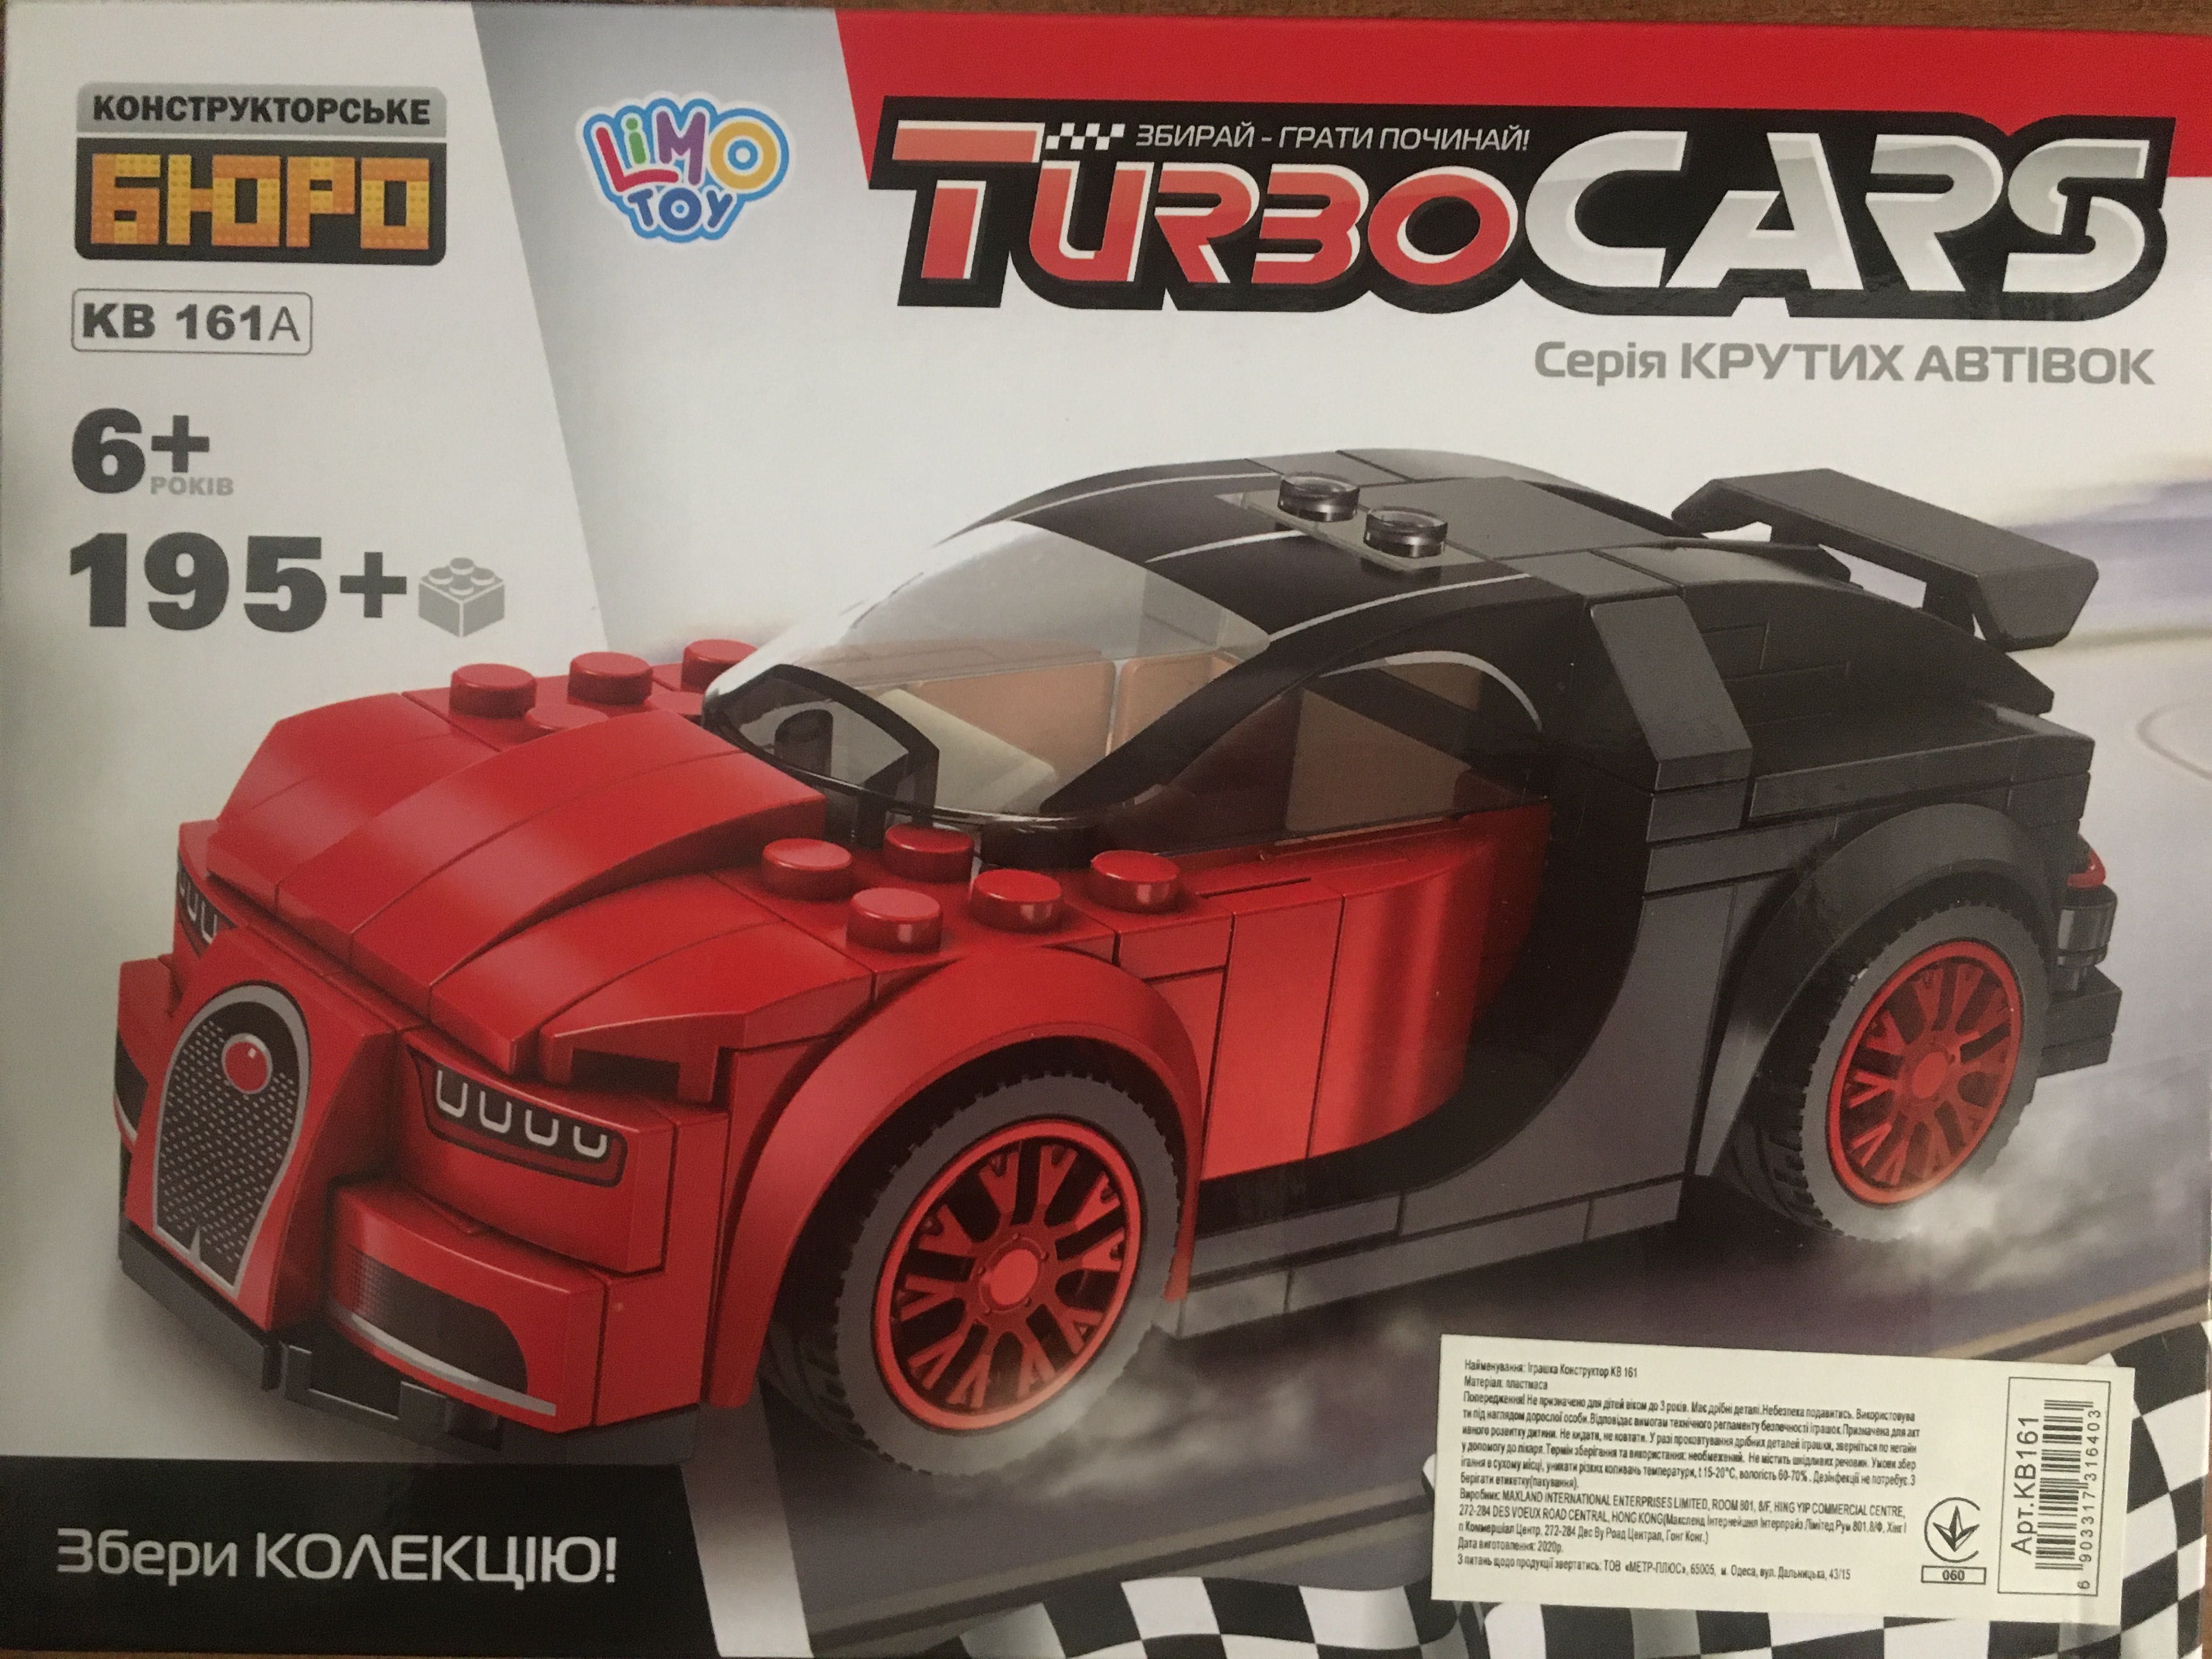 Лего машинка Turbo Cars